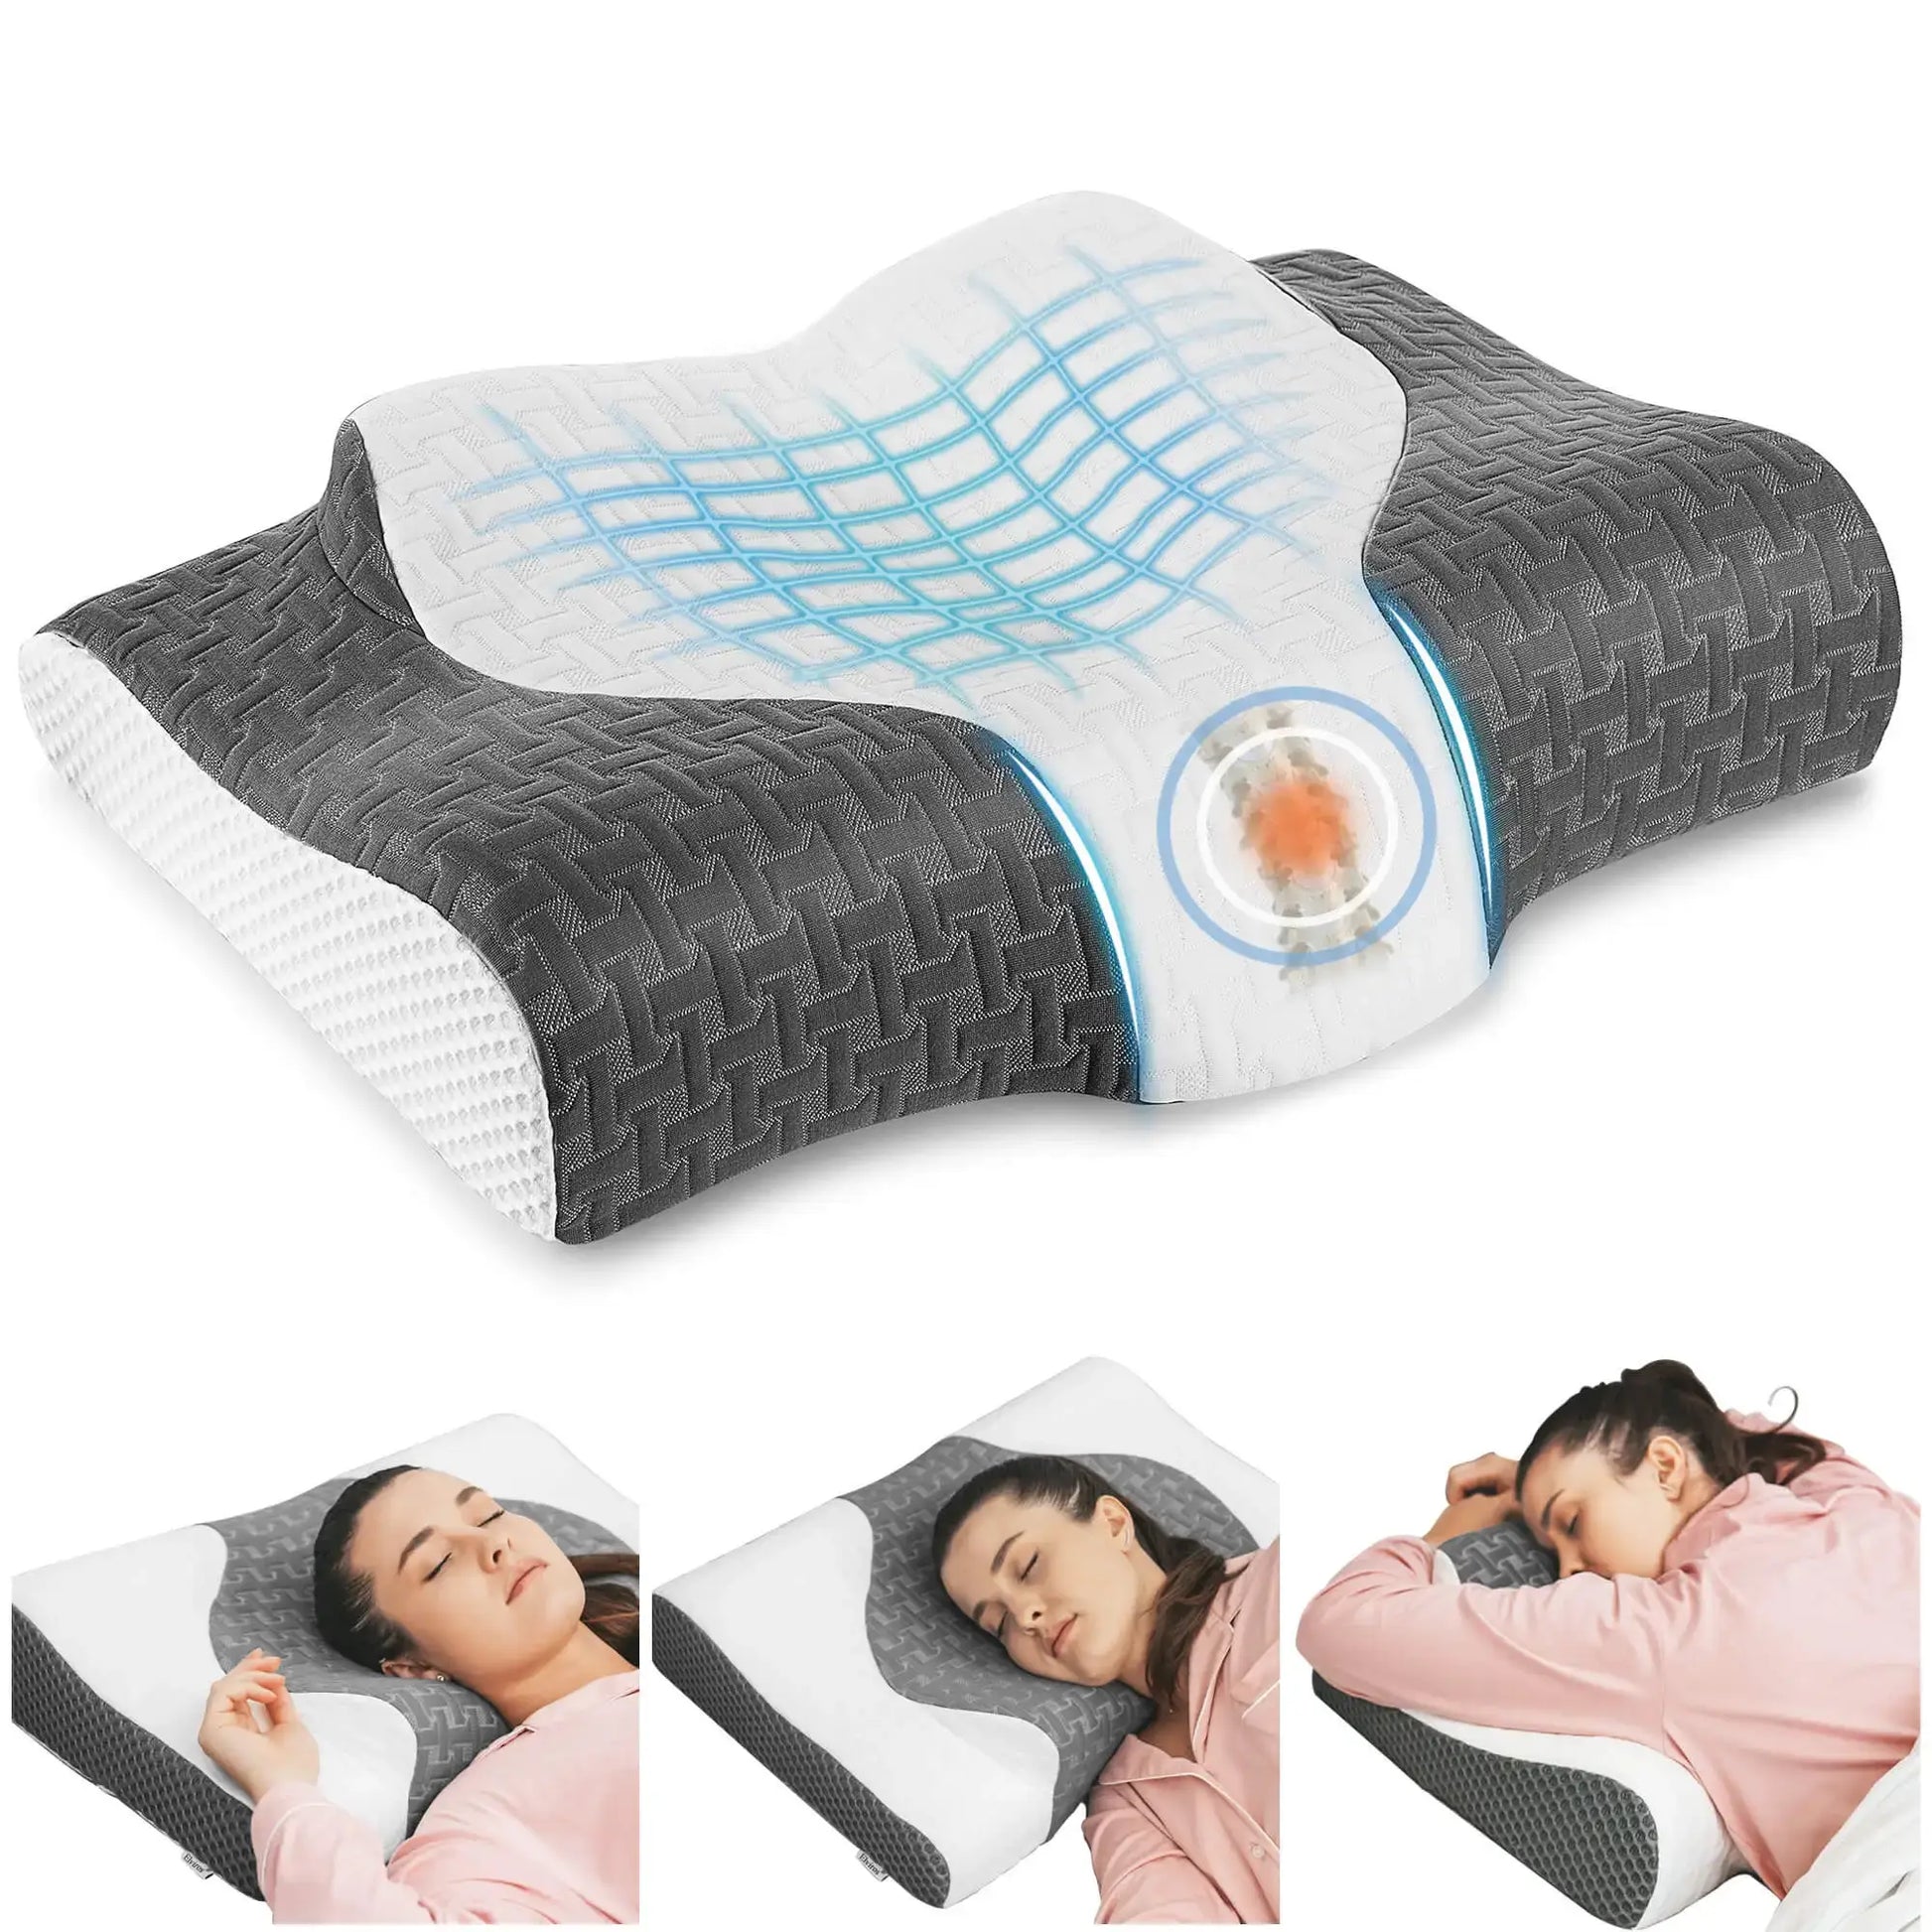 Elviros Cervical Memory Foam Pillow, Ergonomic Contour Pillow